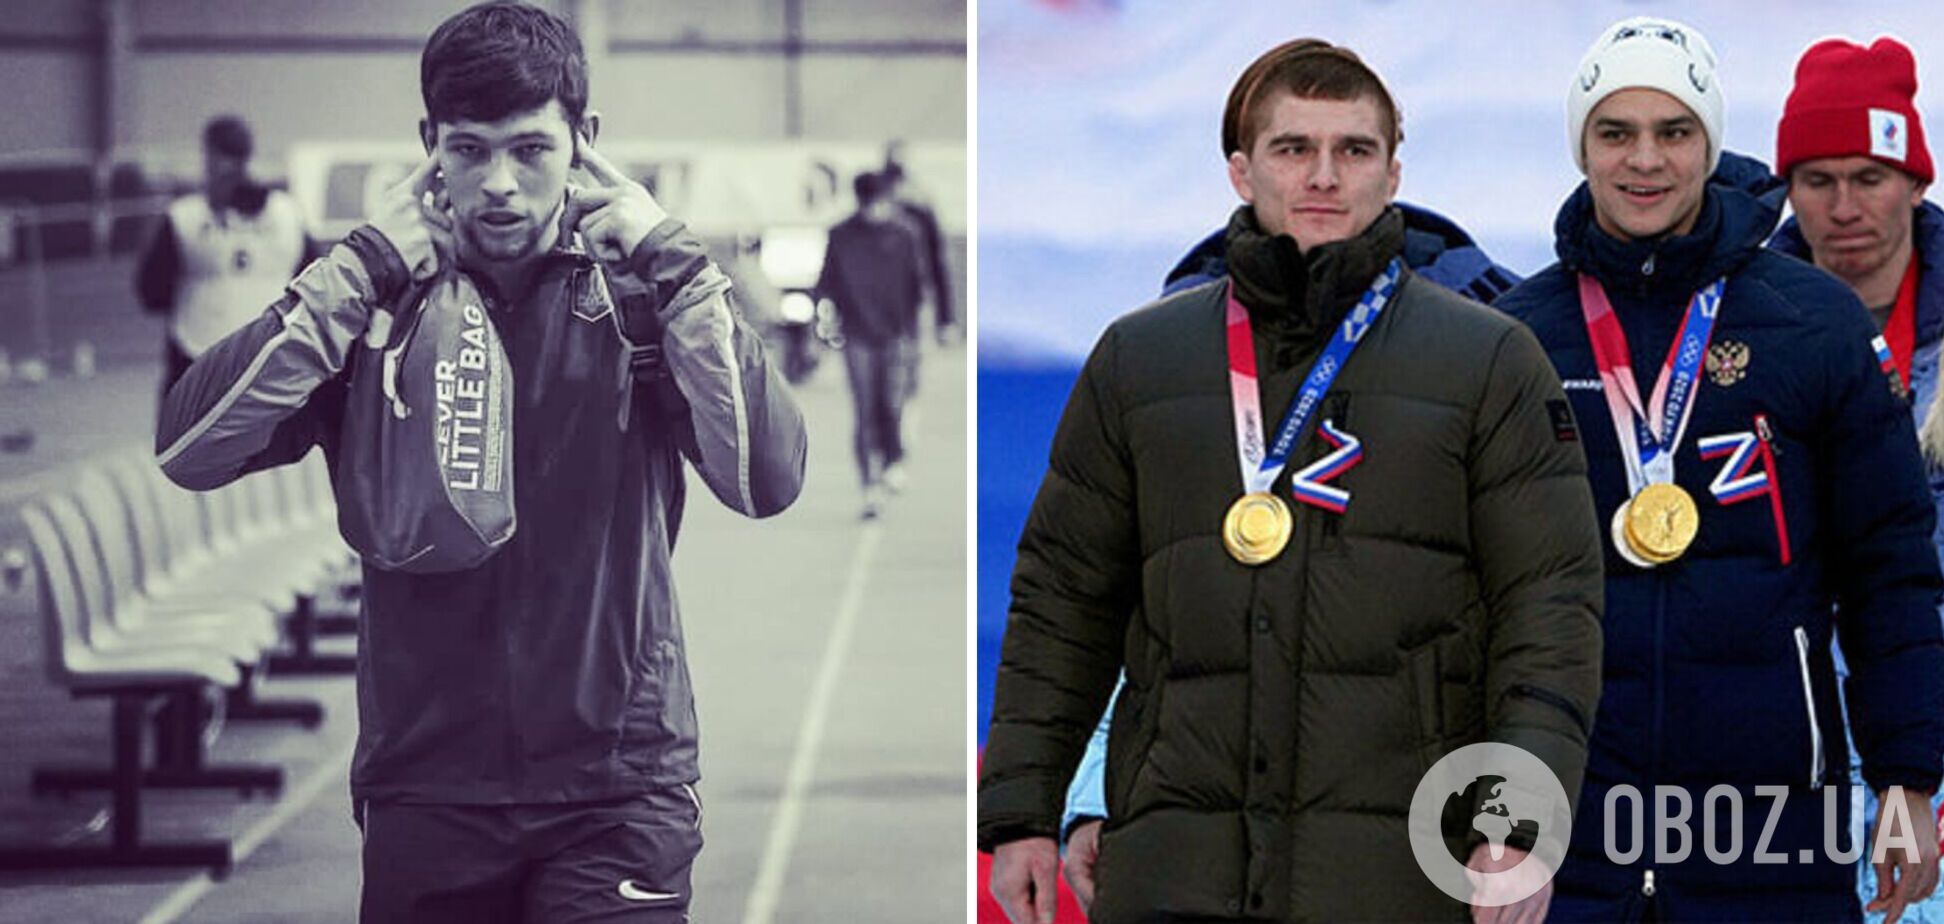 Российские спортсмены поддержали фашизм и должны пропустить Олимпиаду-2024: украинский легкоатлет разочарован в коллегах из РФ